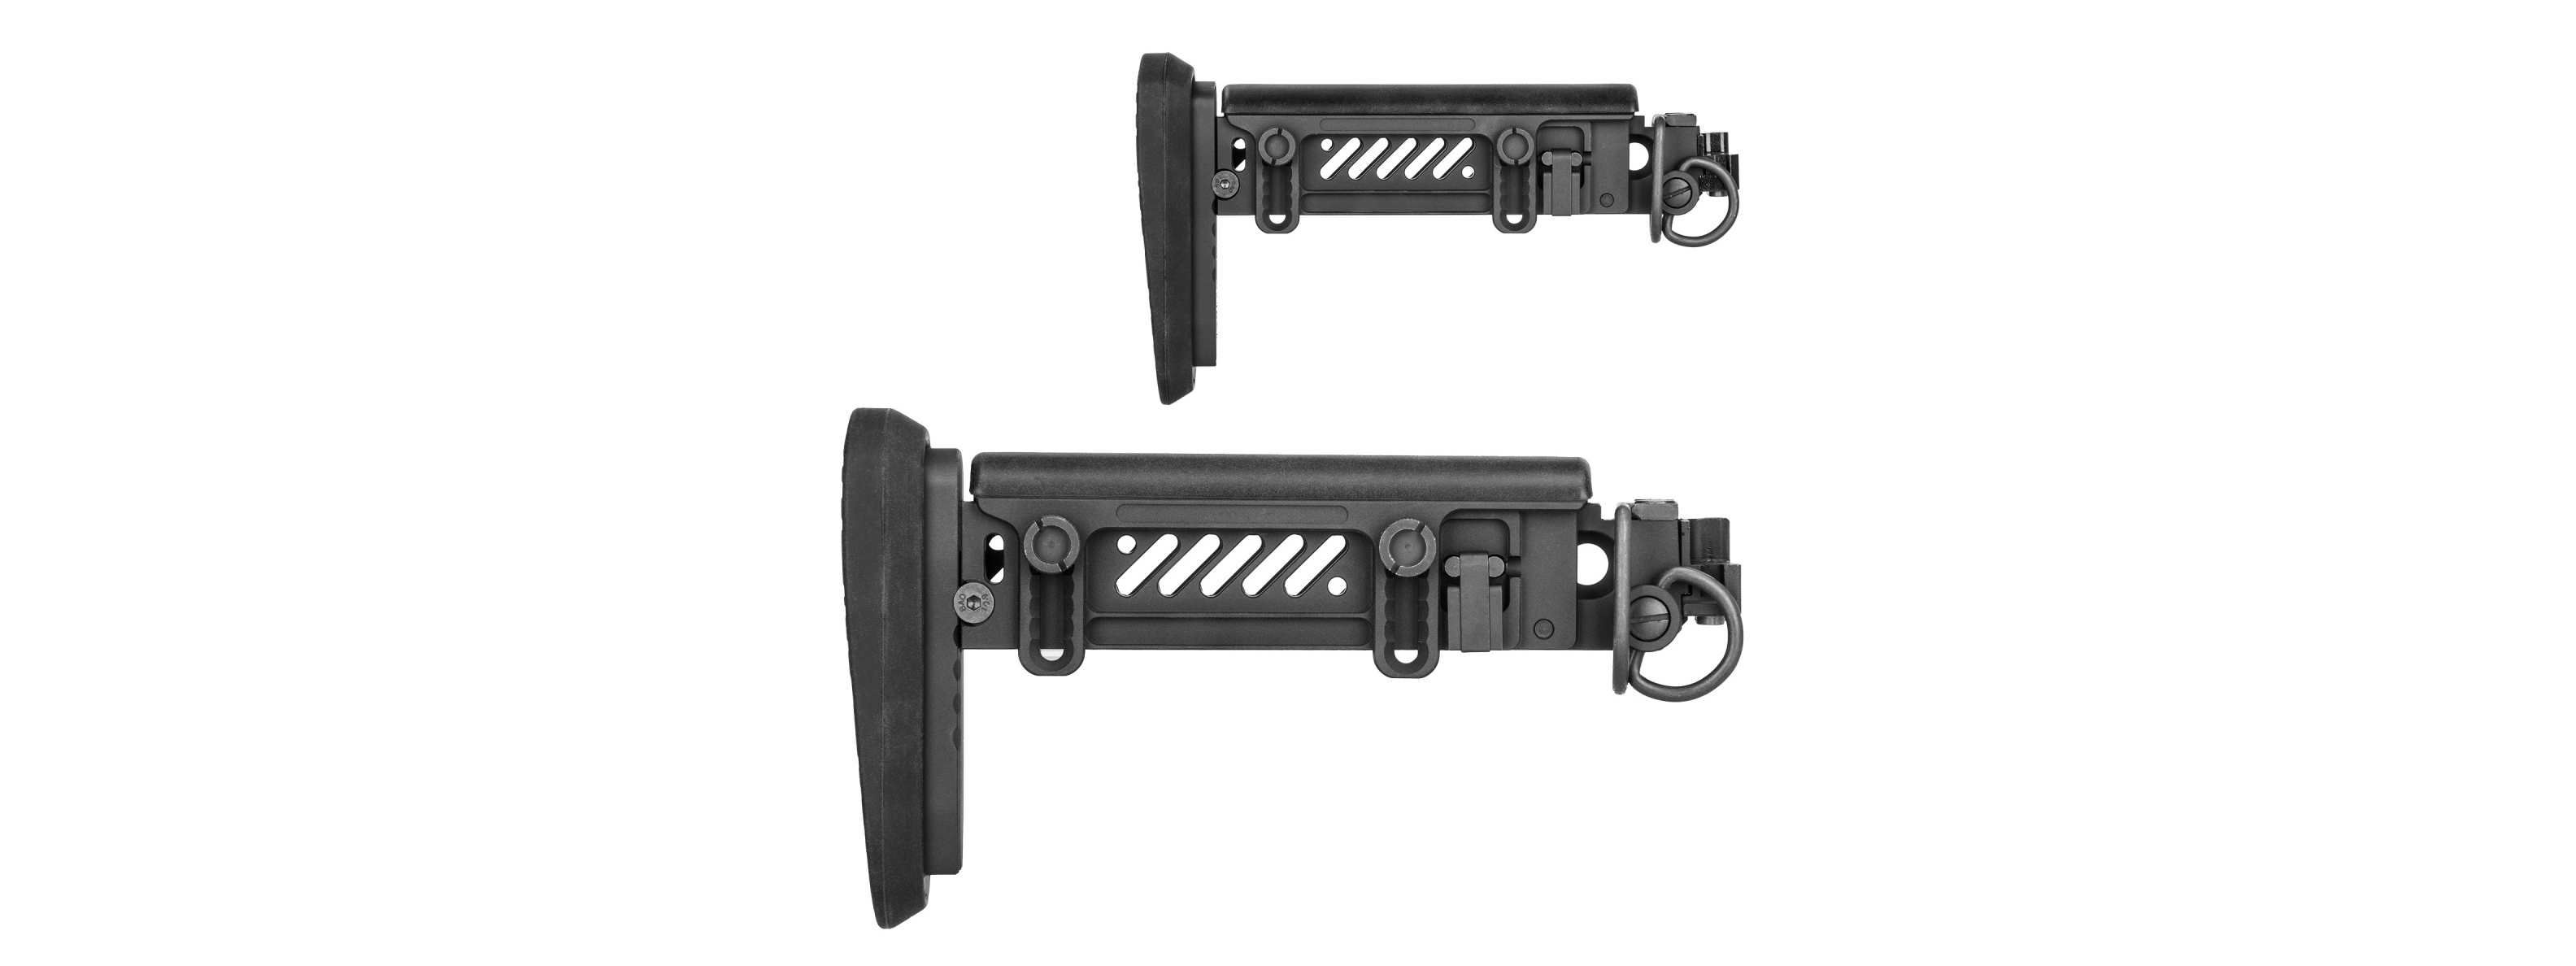 5KU PT-1 AK Side Folding Stock for E&L AK (Gen 2) - Click Image to Close